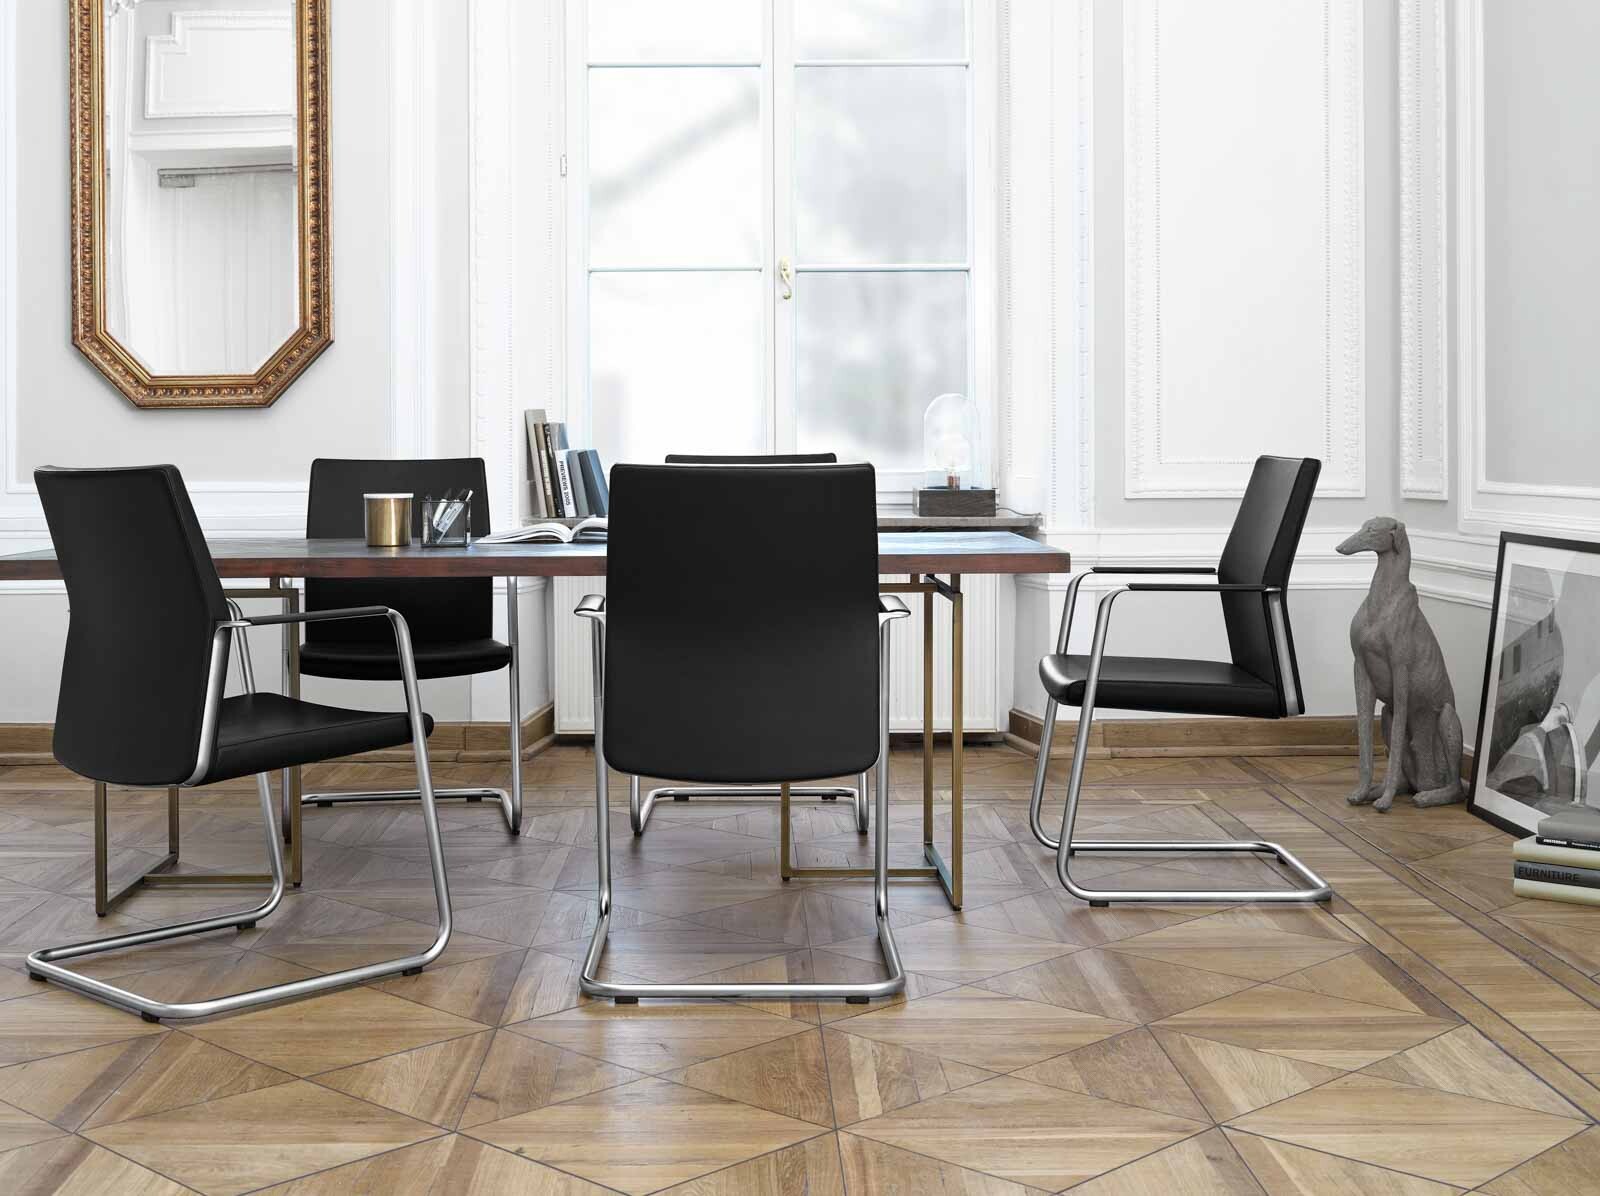 Bild eines Konferenzraumes mit hochwertigen Konferenzstühlen in schwarzer, schlichter Optik. 